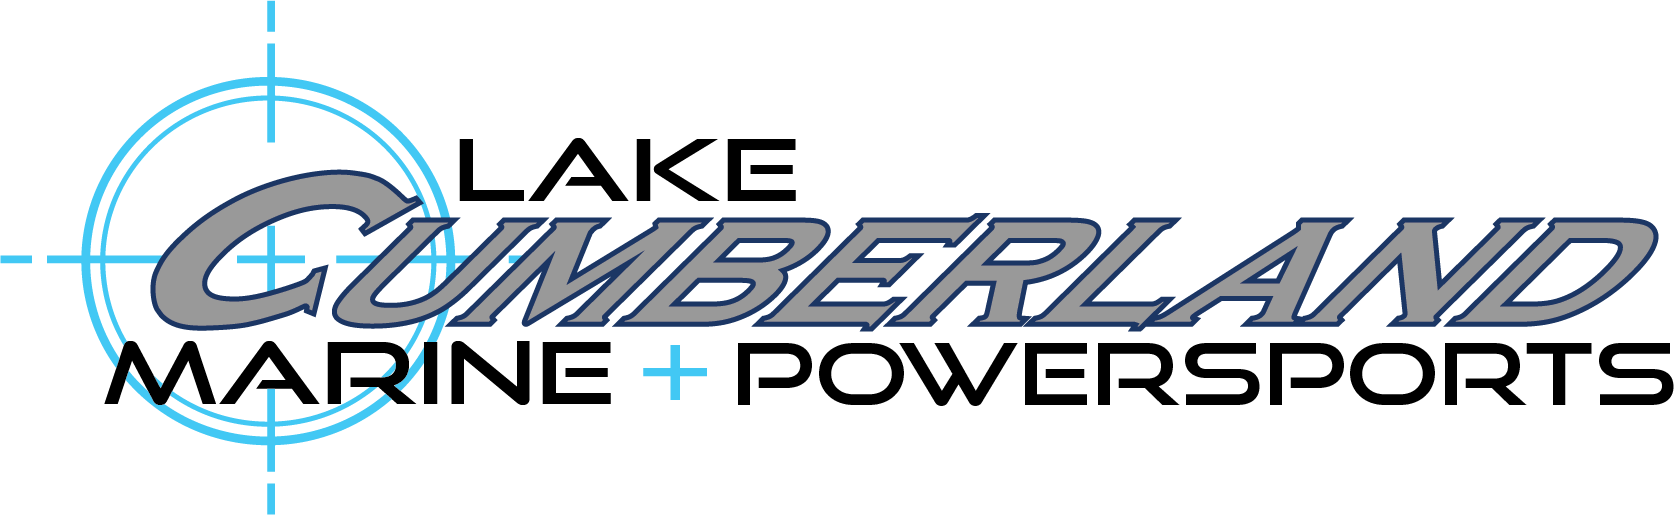 Lake Cumberland Marine and Powersports Logo 11-15 Blue